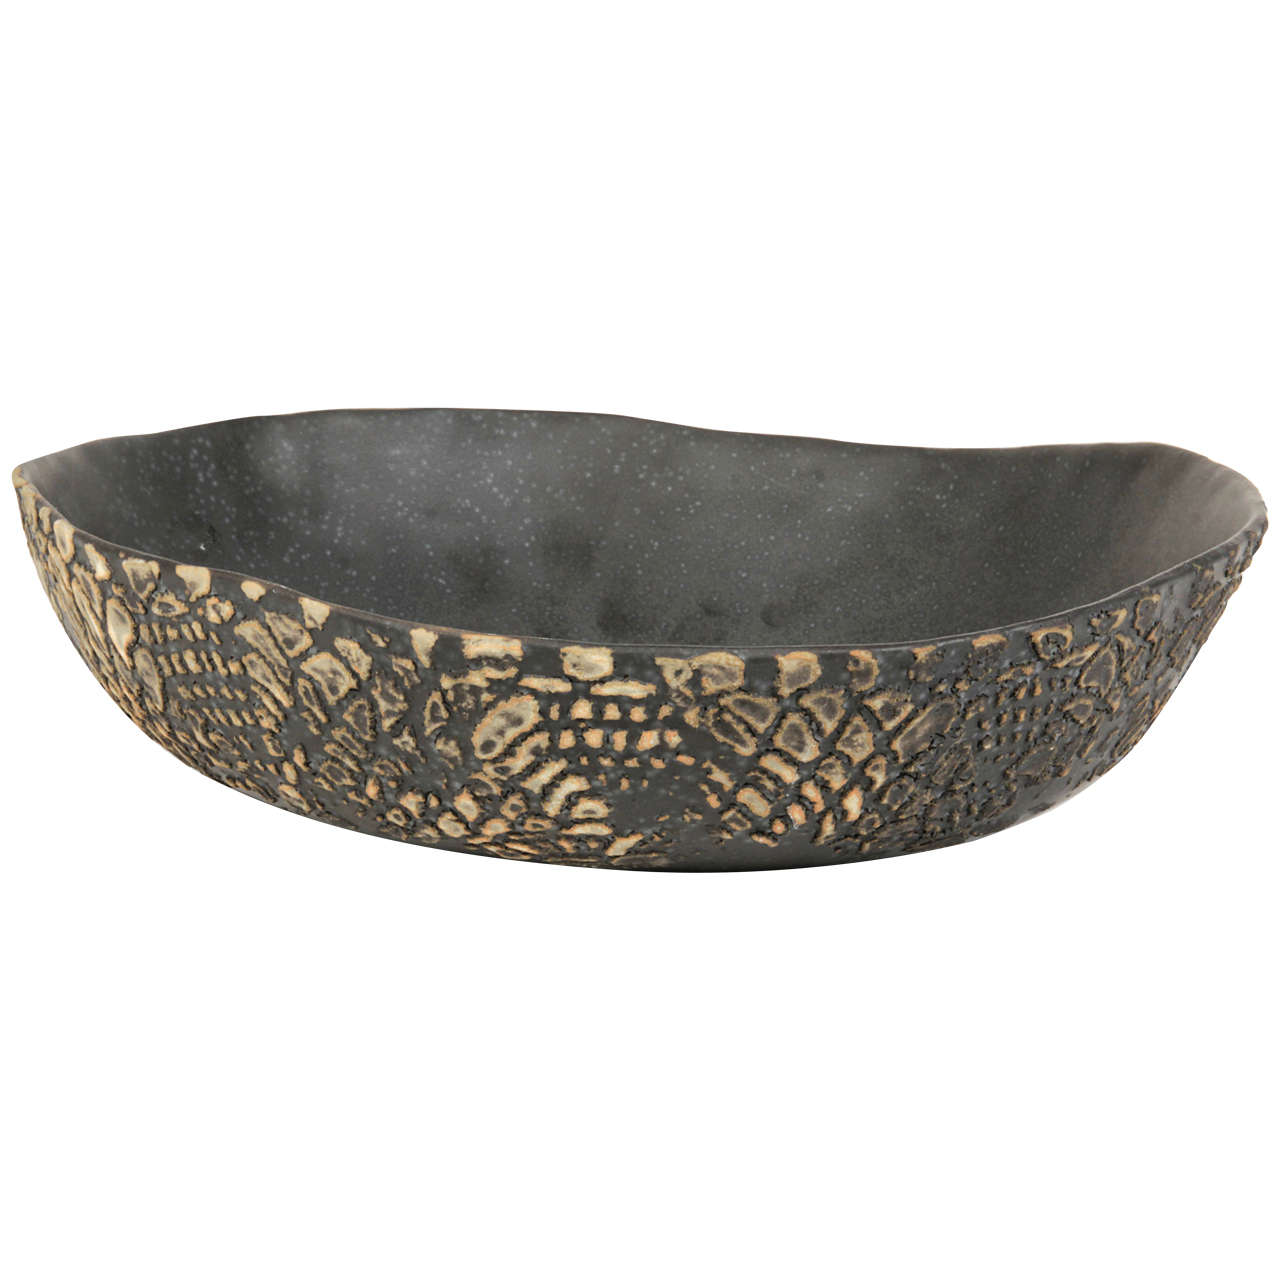 Decorative Thai Ceramic Bowl